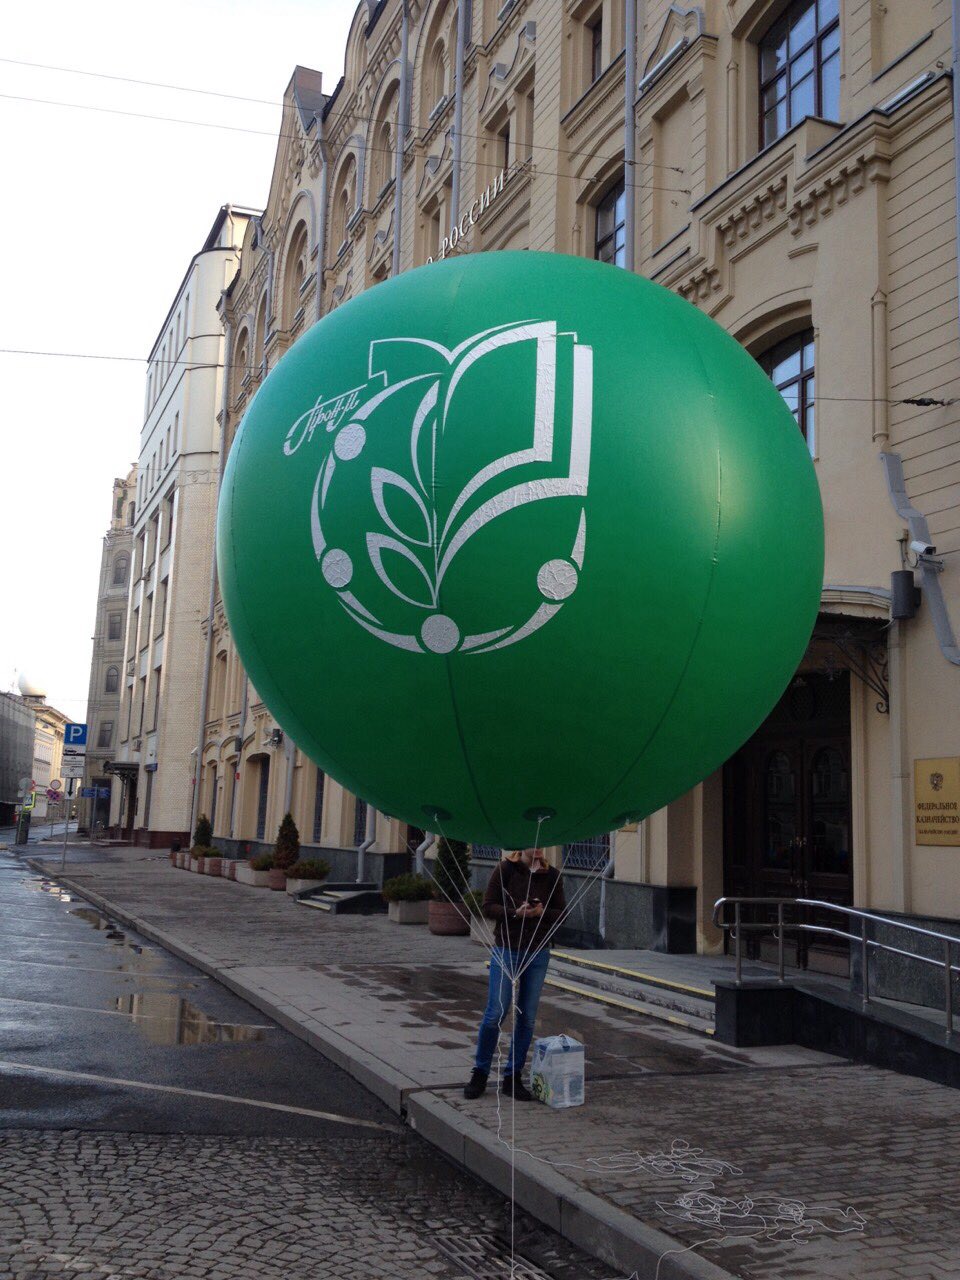 Большой рекламный шар Зелёный